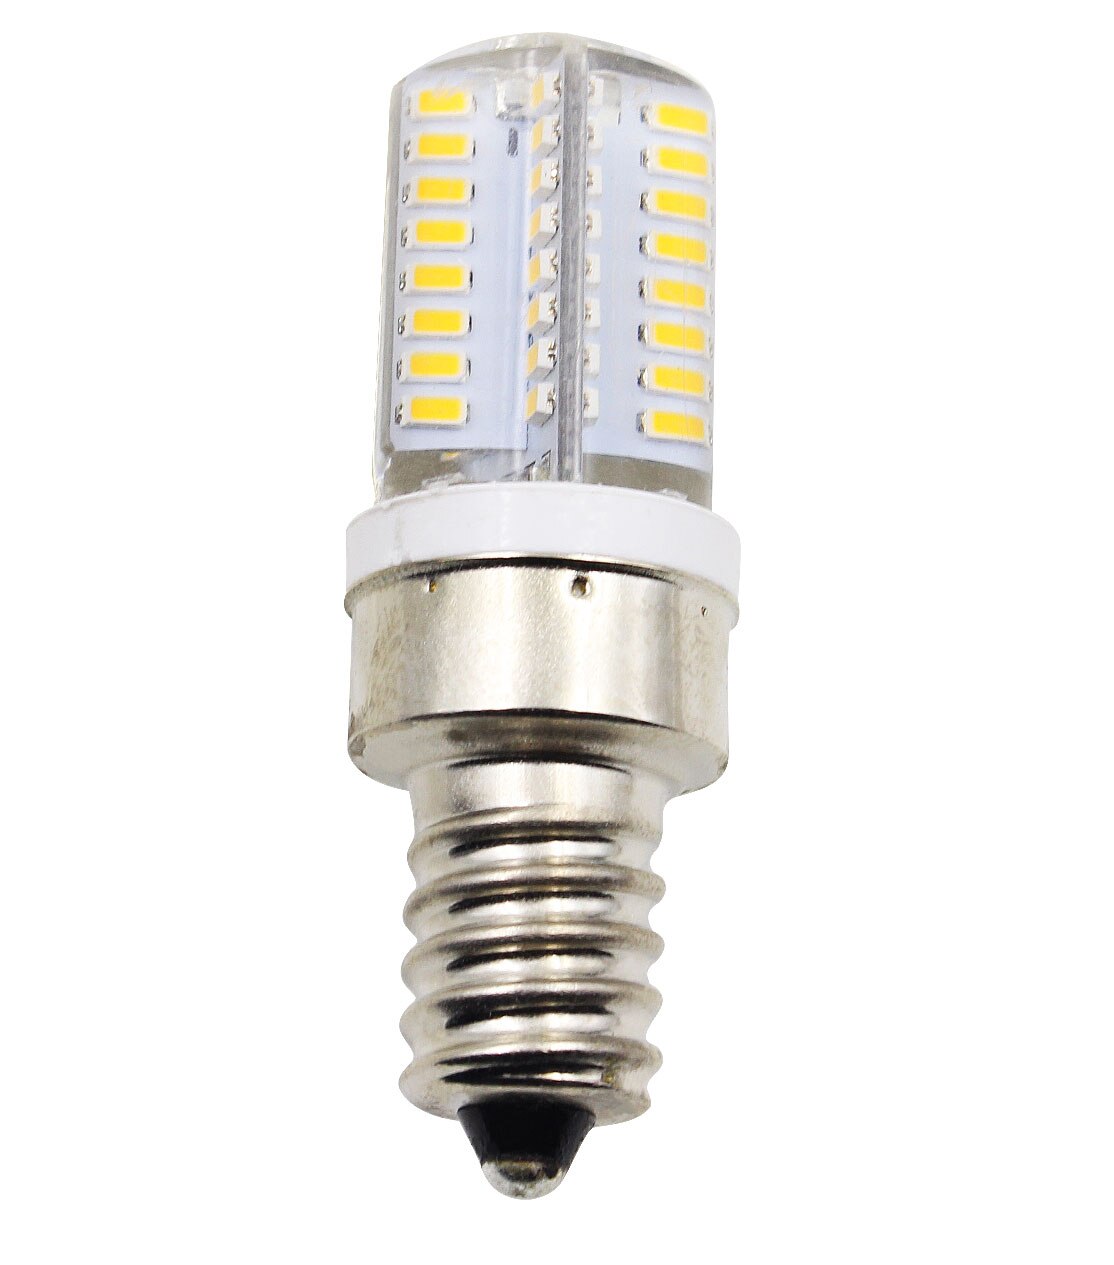 E12 Kandelaar Base LED Lamp Warm Wit voor GE Droger Licht, WE4M305 Vervanging